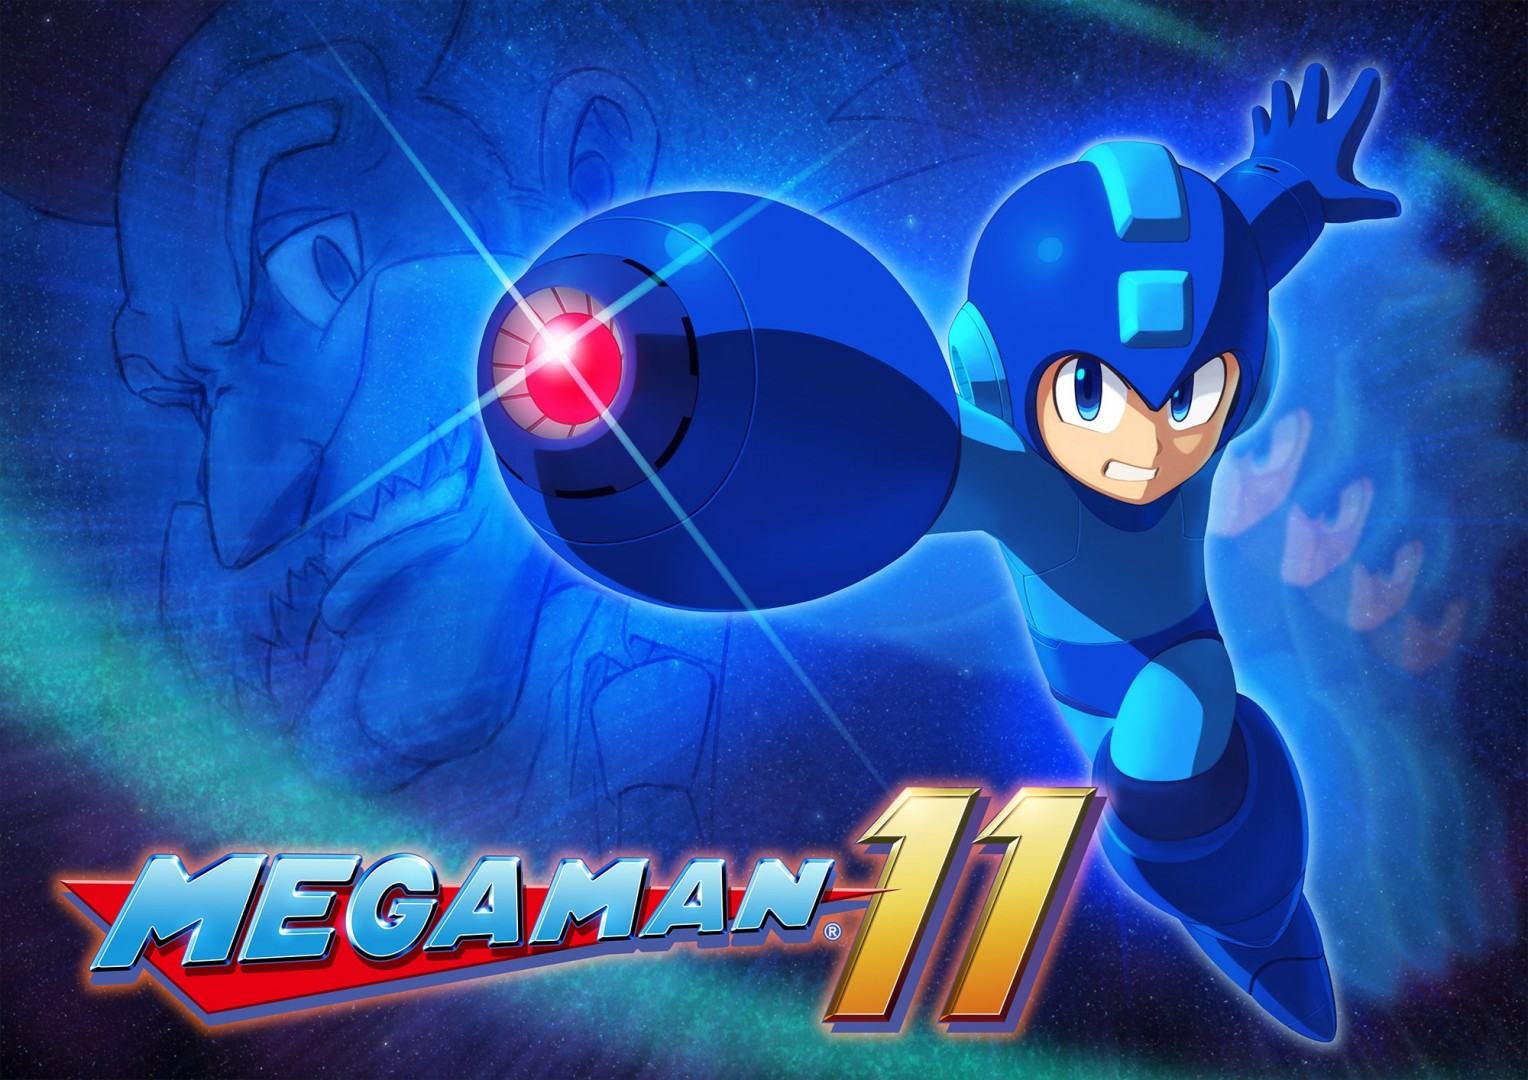 Capcom تنظر في الخيارات المختلفة لتقديم لعبة Mega Man جديدة